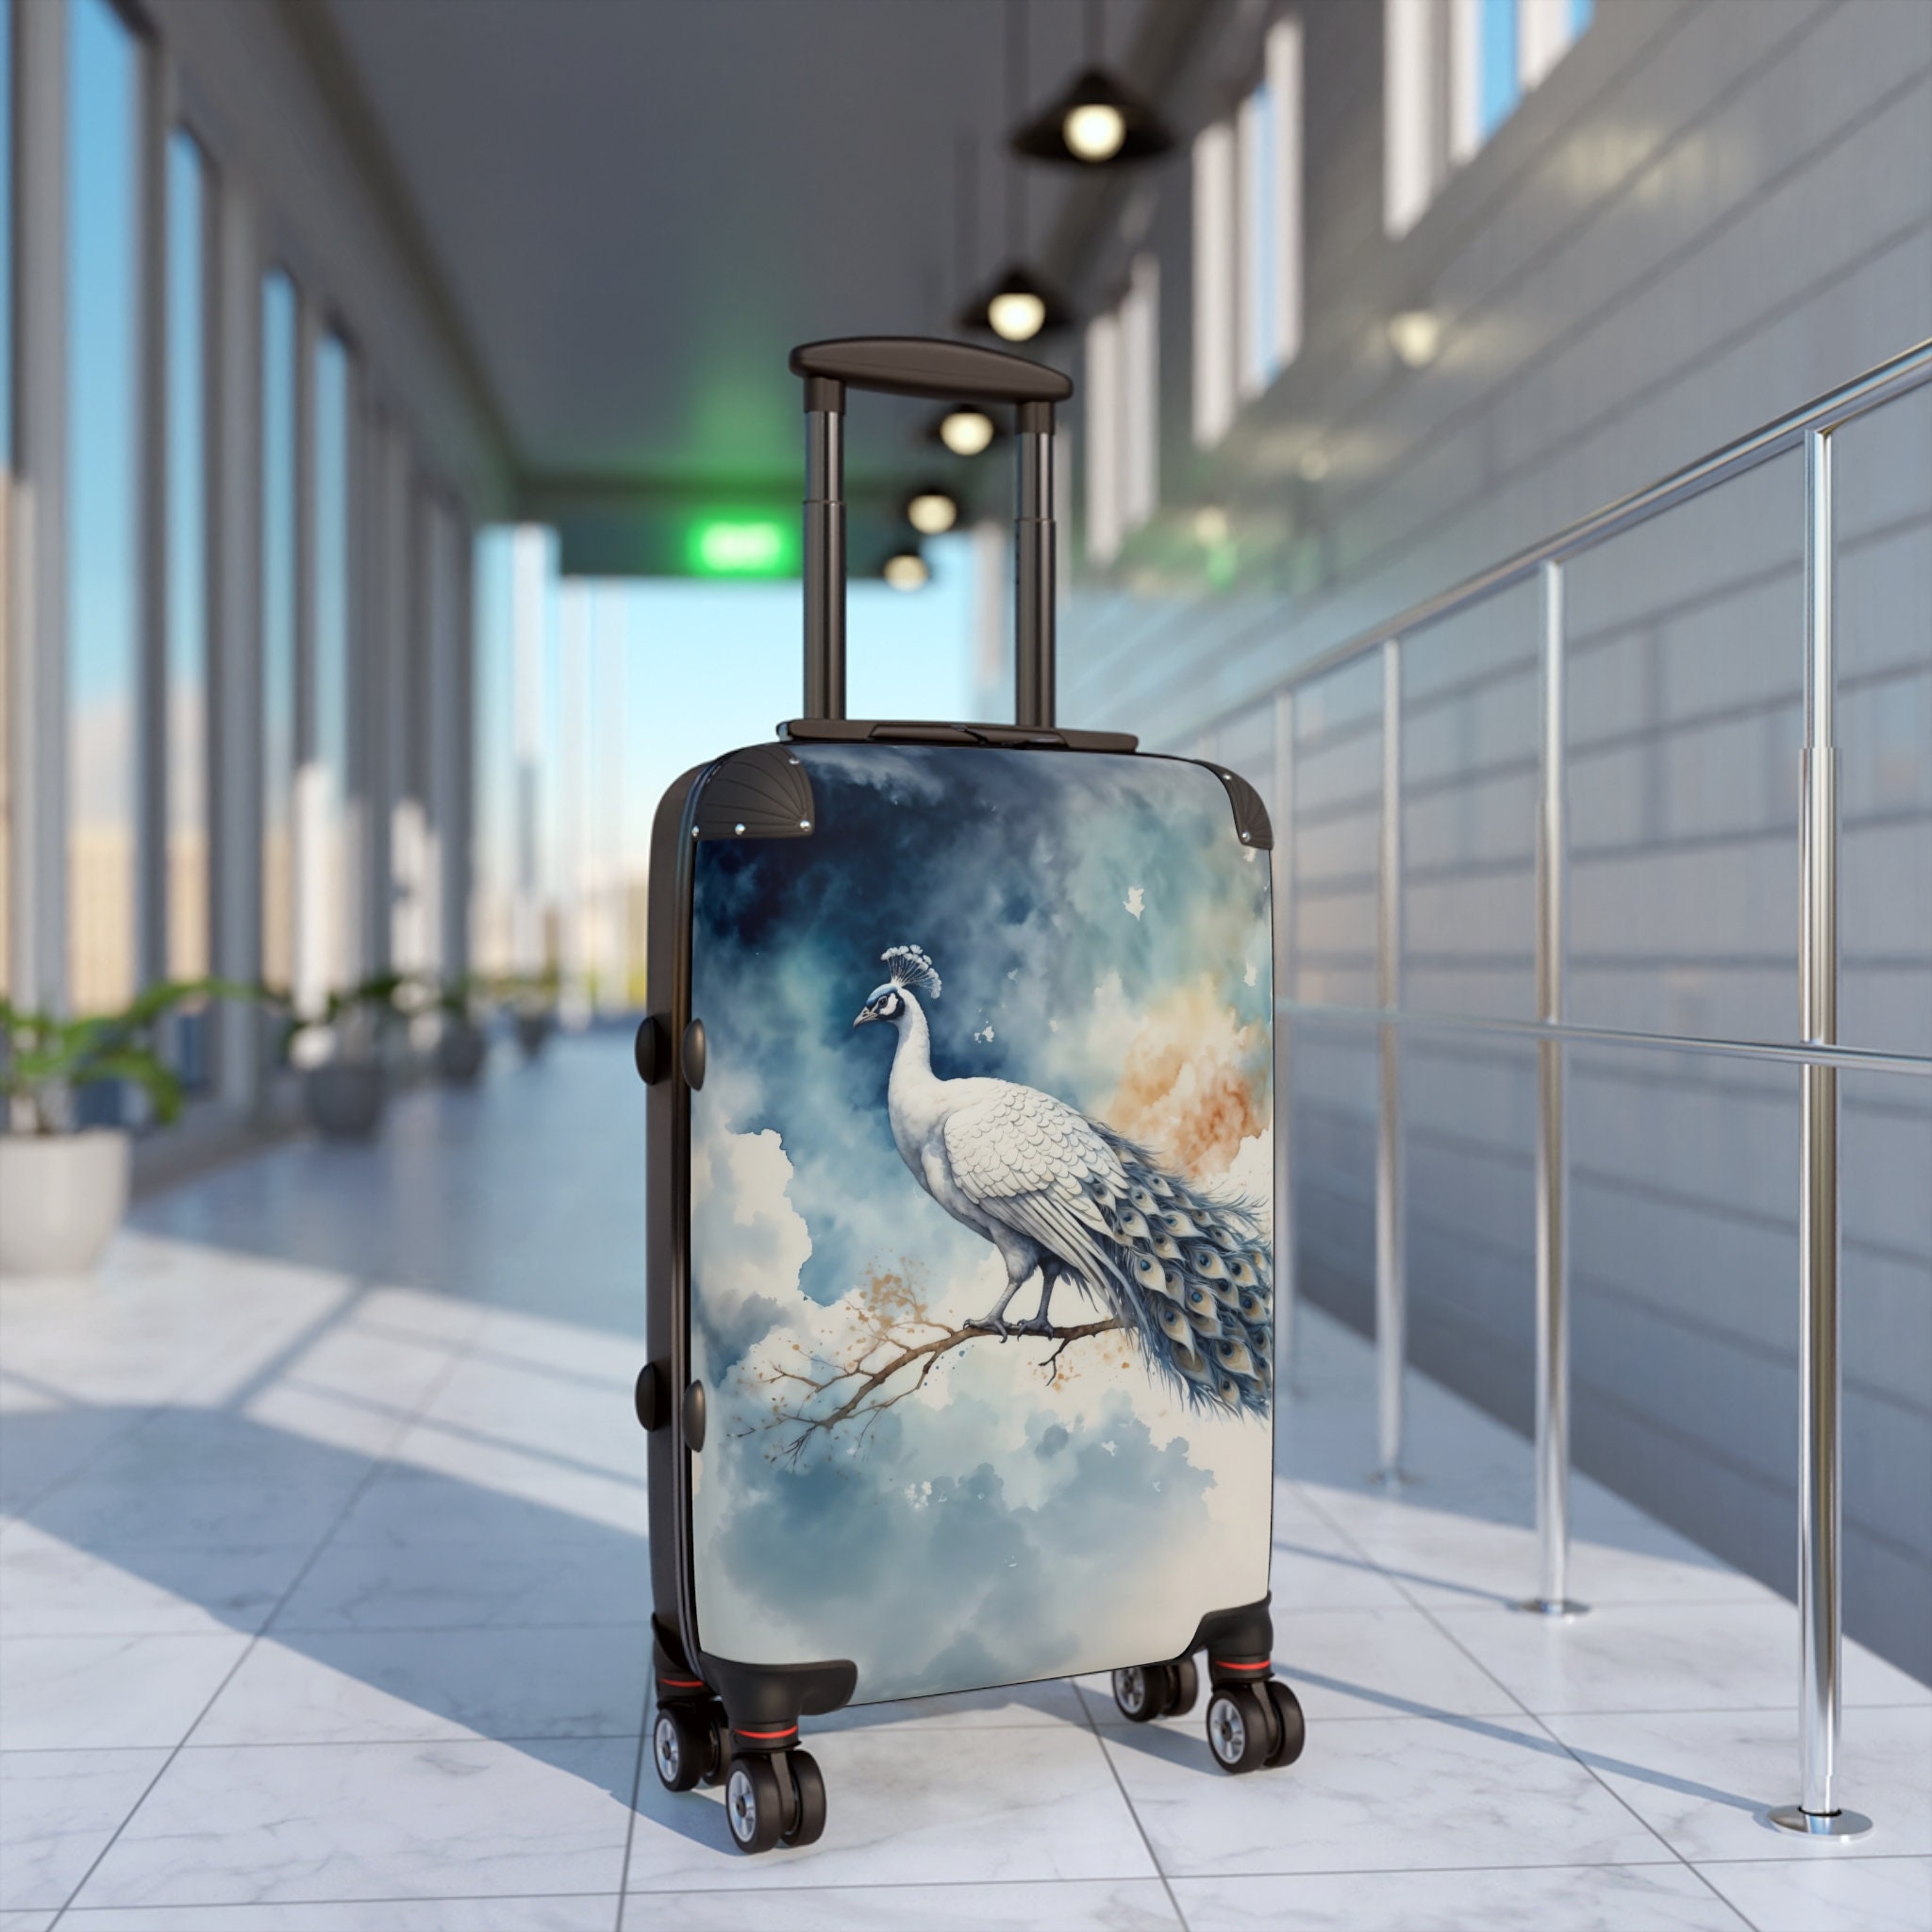 Celestial Watercolor White-Blue Peacock Portrait Suitcase